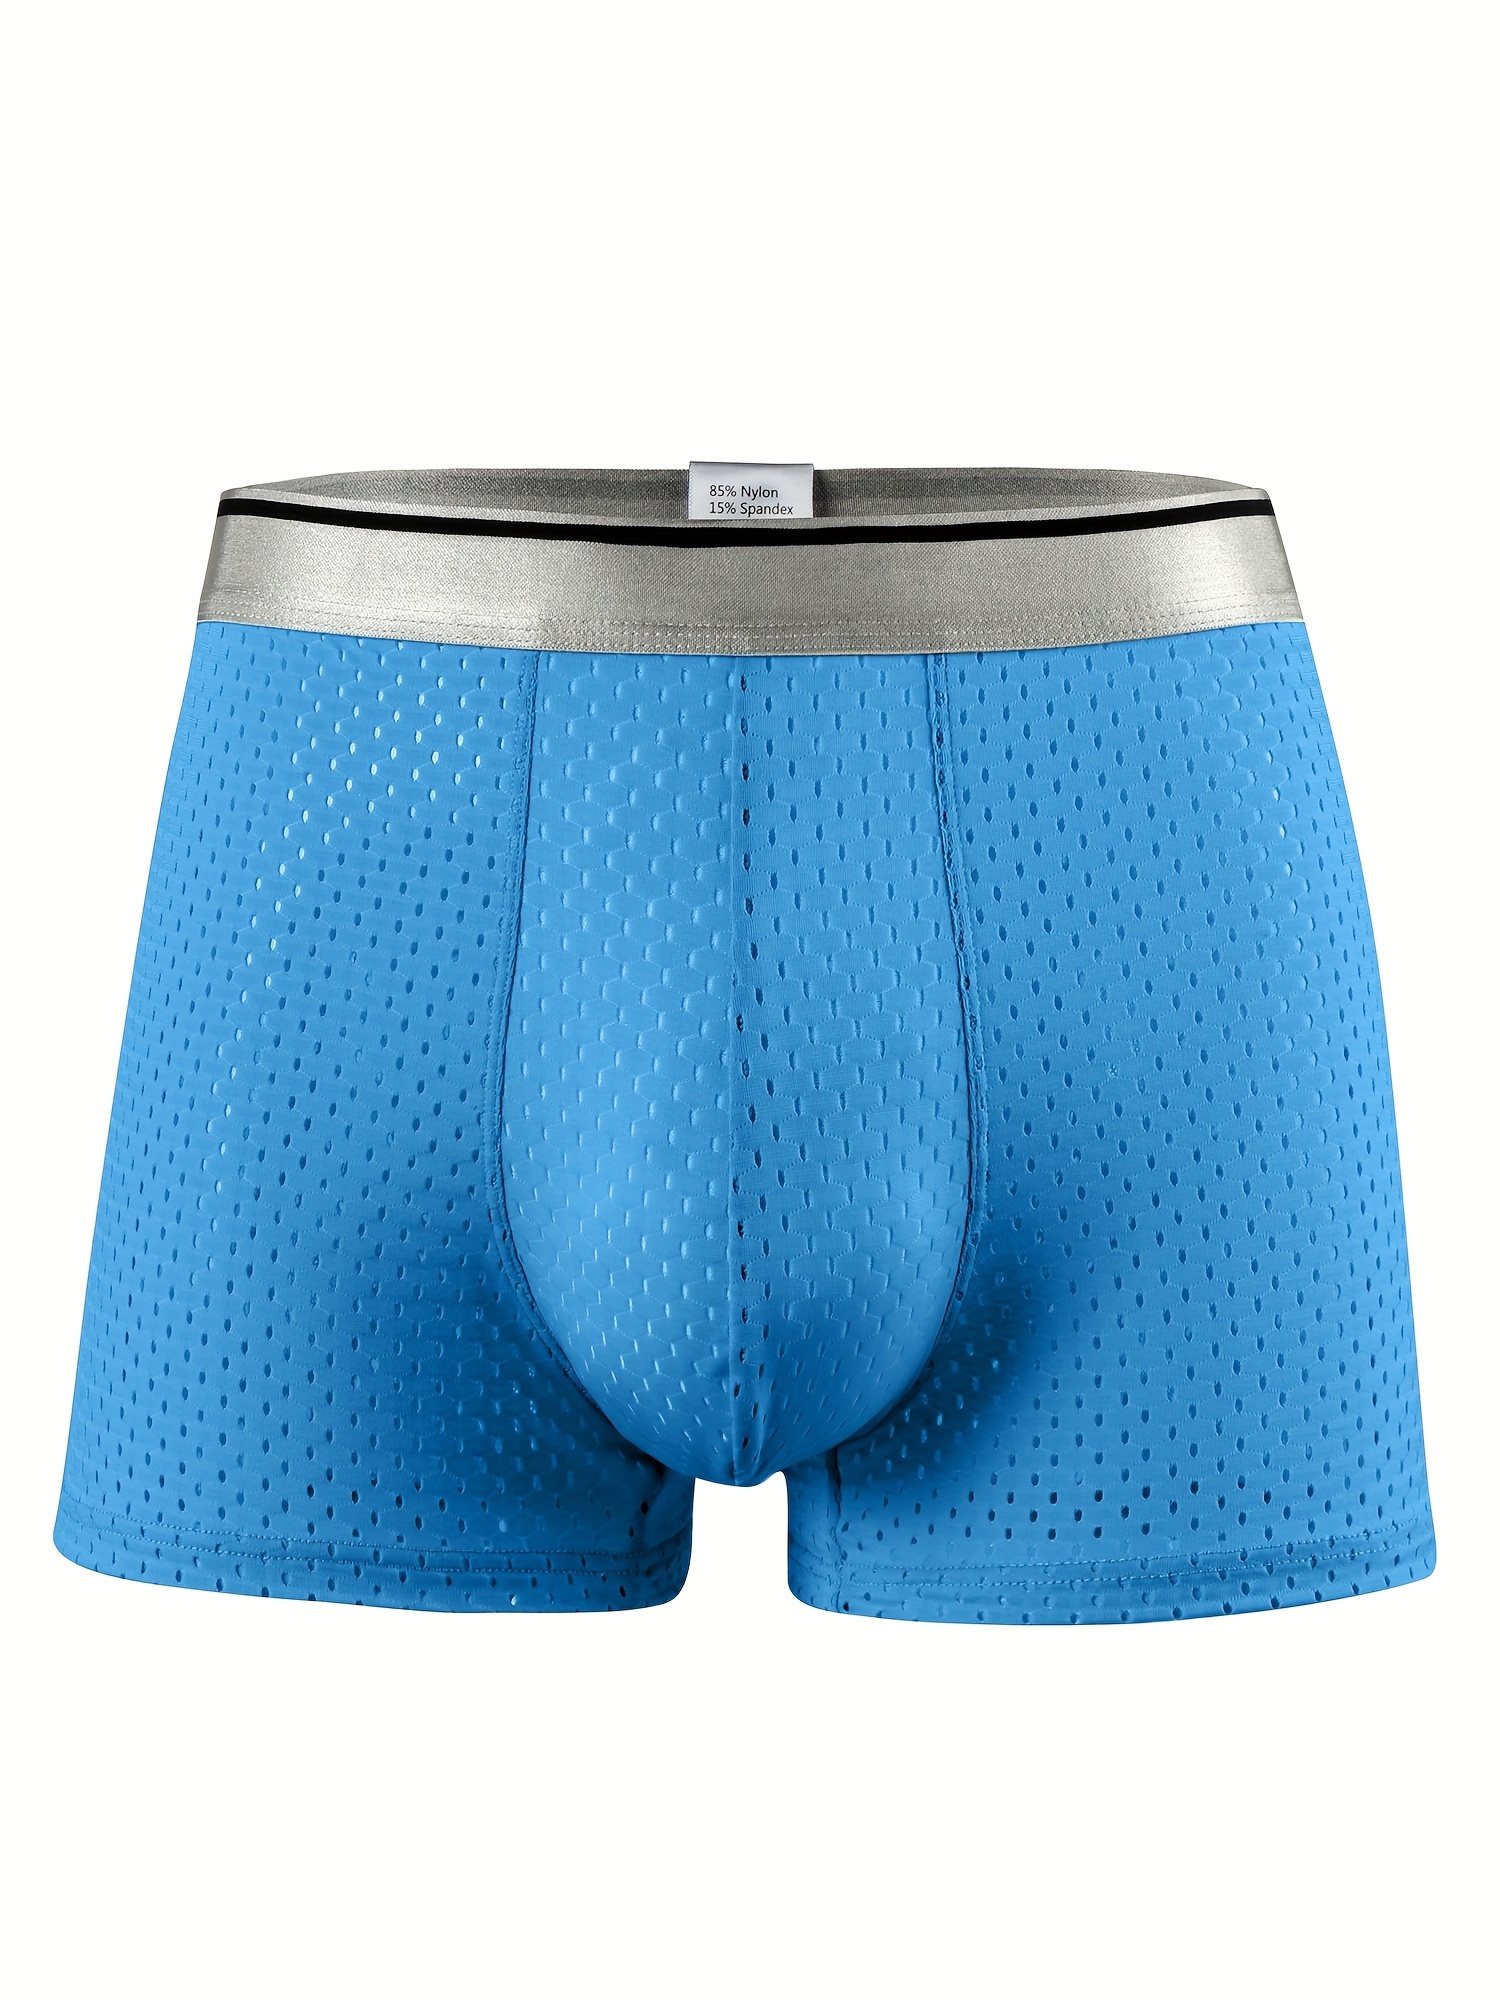 Men's Big & Tall Boxer Briefs, Men's Underwear